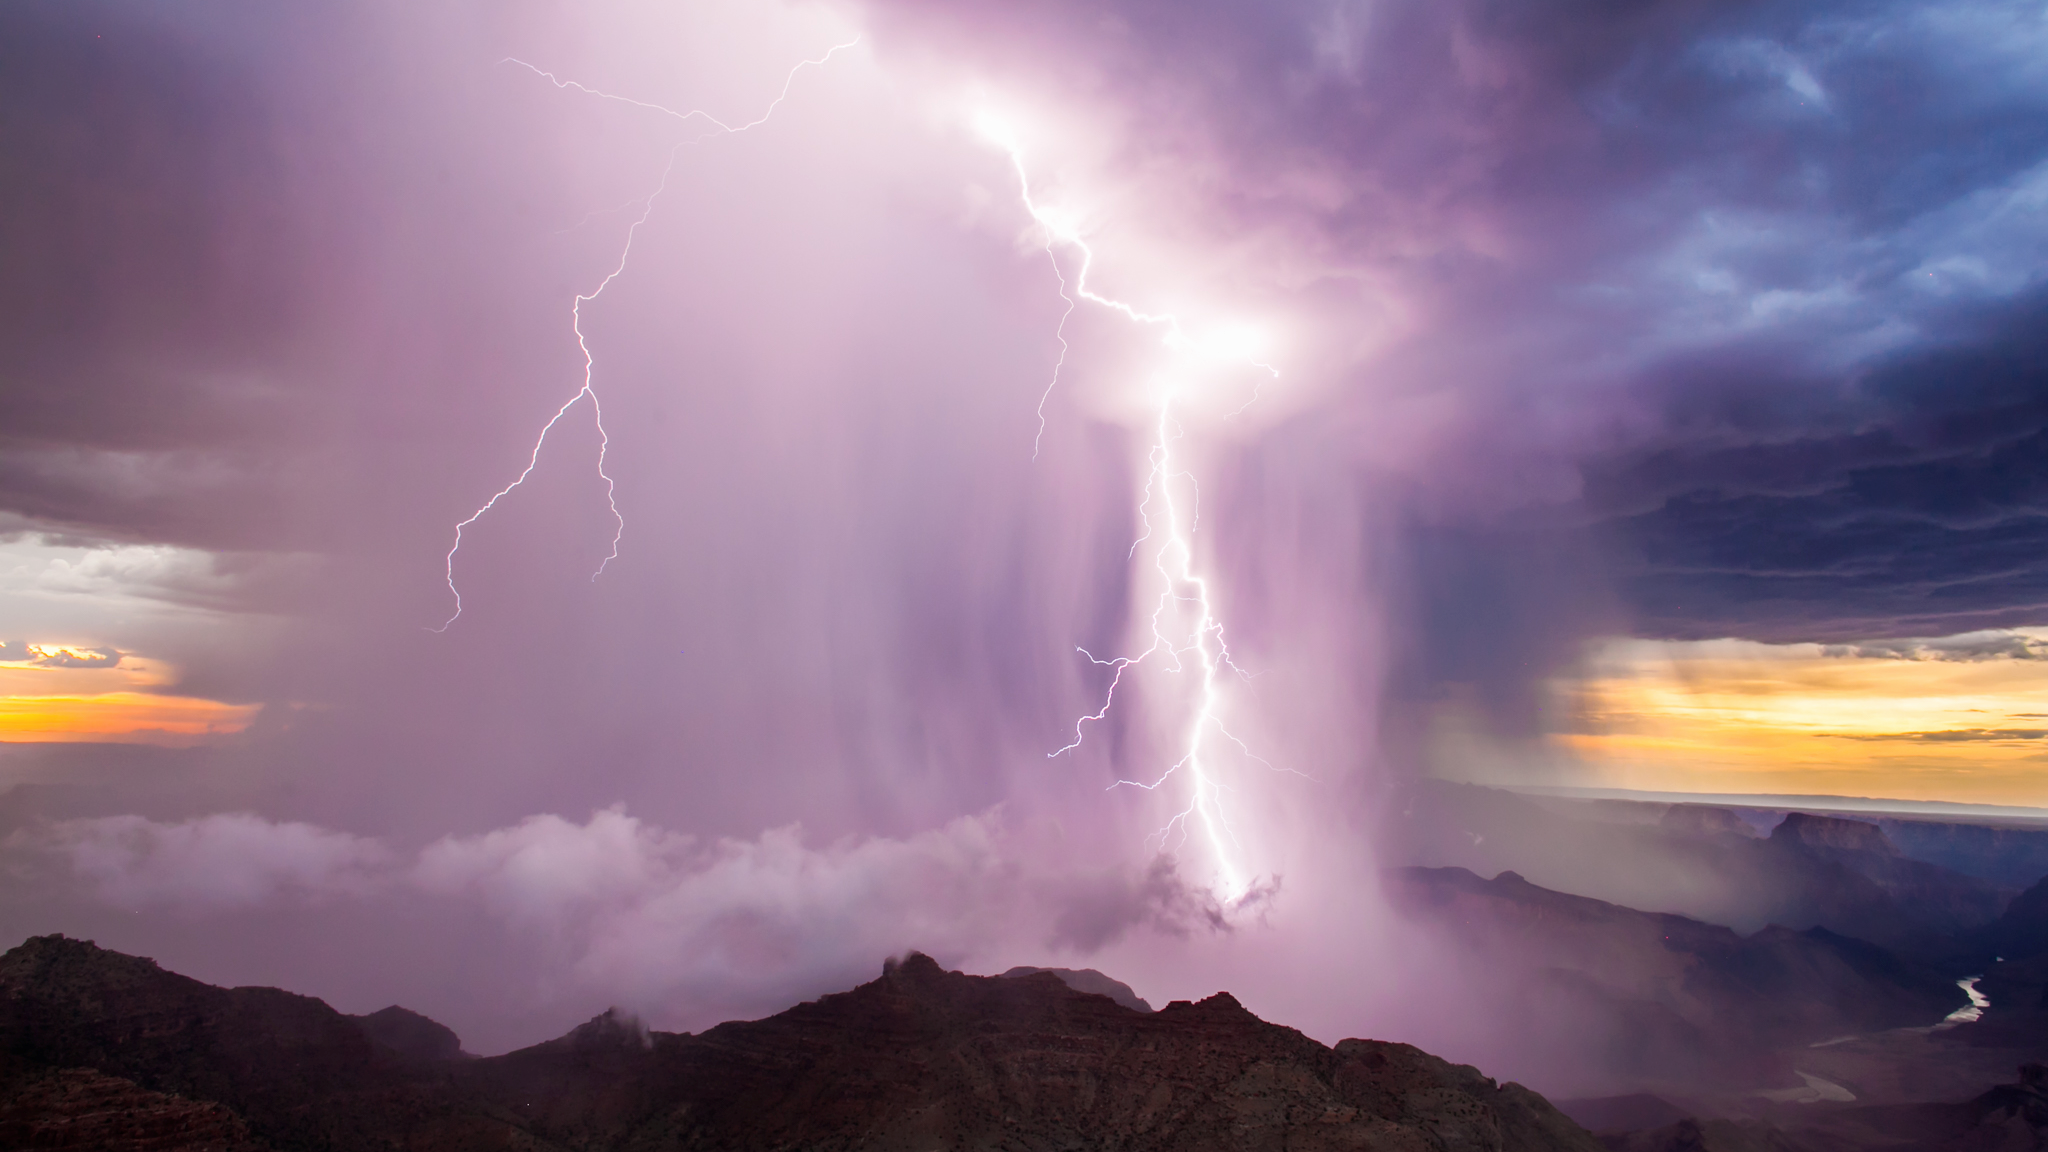 General 2048x1152 lightning storm nature landscape